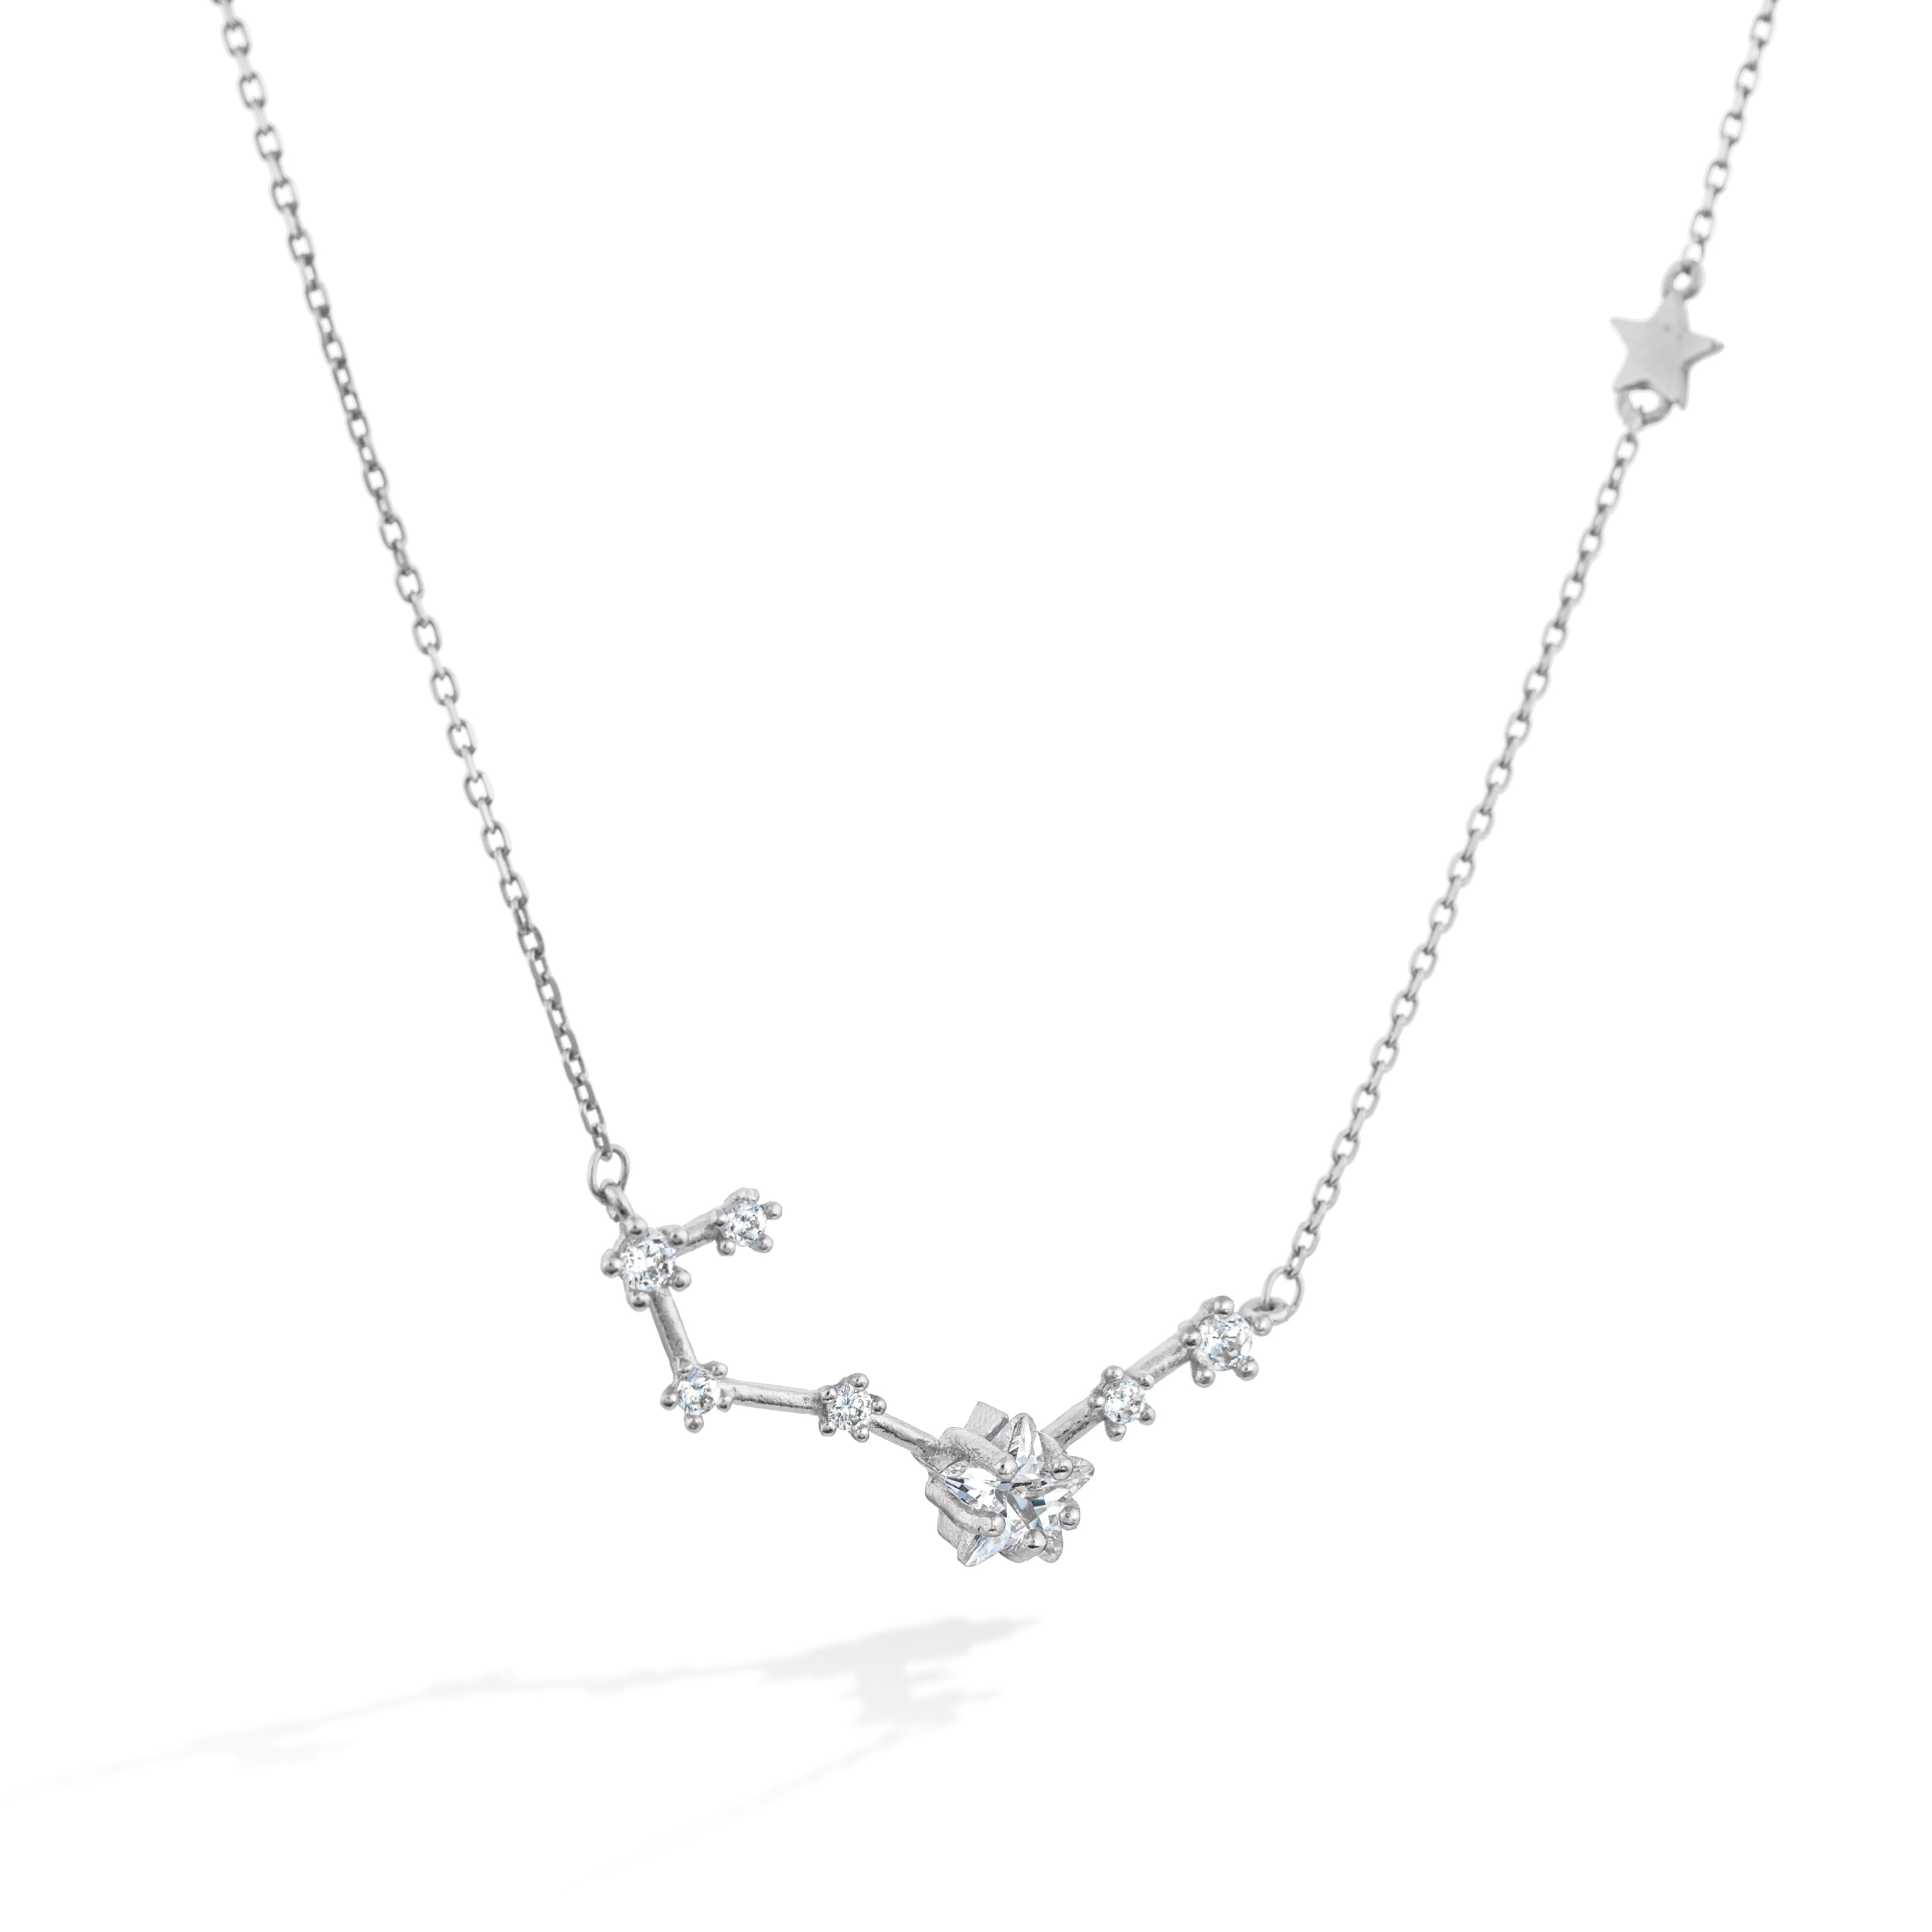 Shabella Necklaces Constellation Necklace